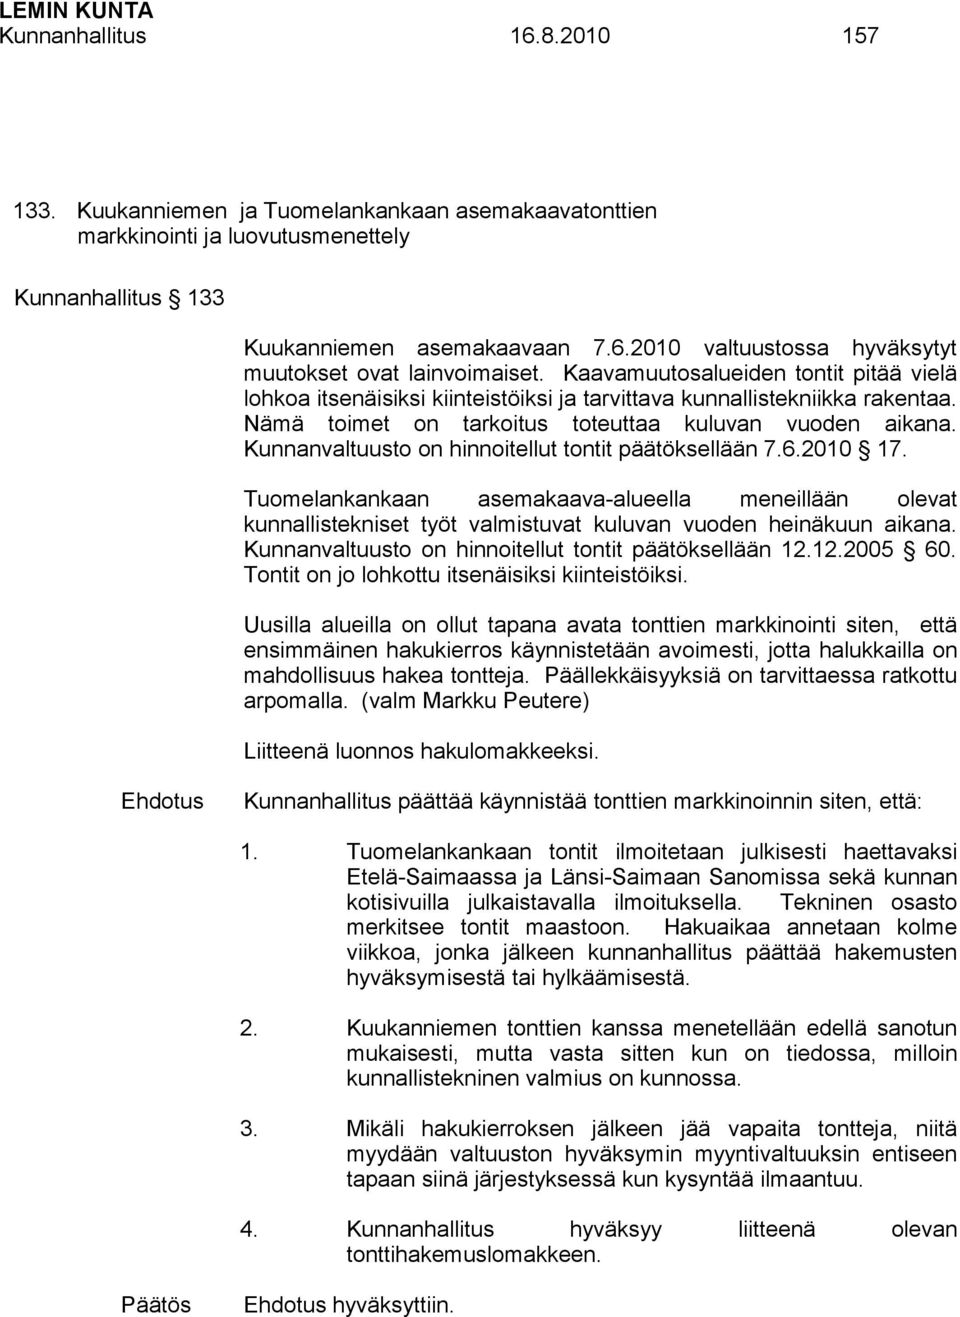 Kunnanvaltuusto on hinnoitellut tontit päätöksellään 7.6.2010 17. Tuomelankankaan asemakaava-alueella meneillään olevat kunnallistekniset työt valmistuvat kuluvan vuoden heinäkuun aikana.